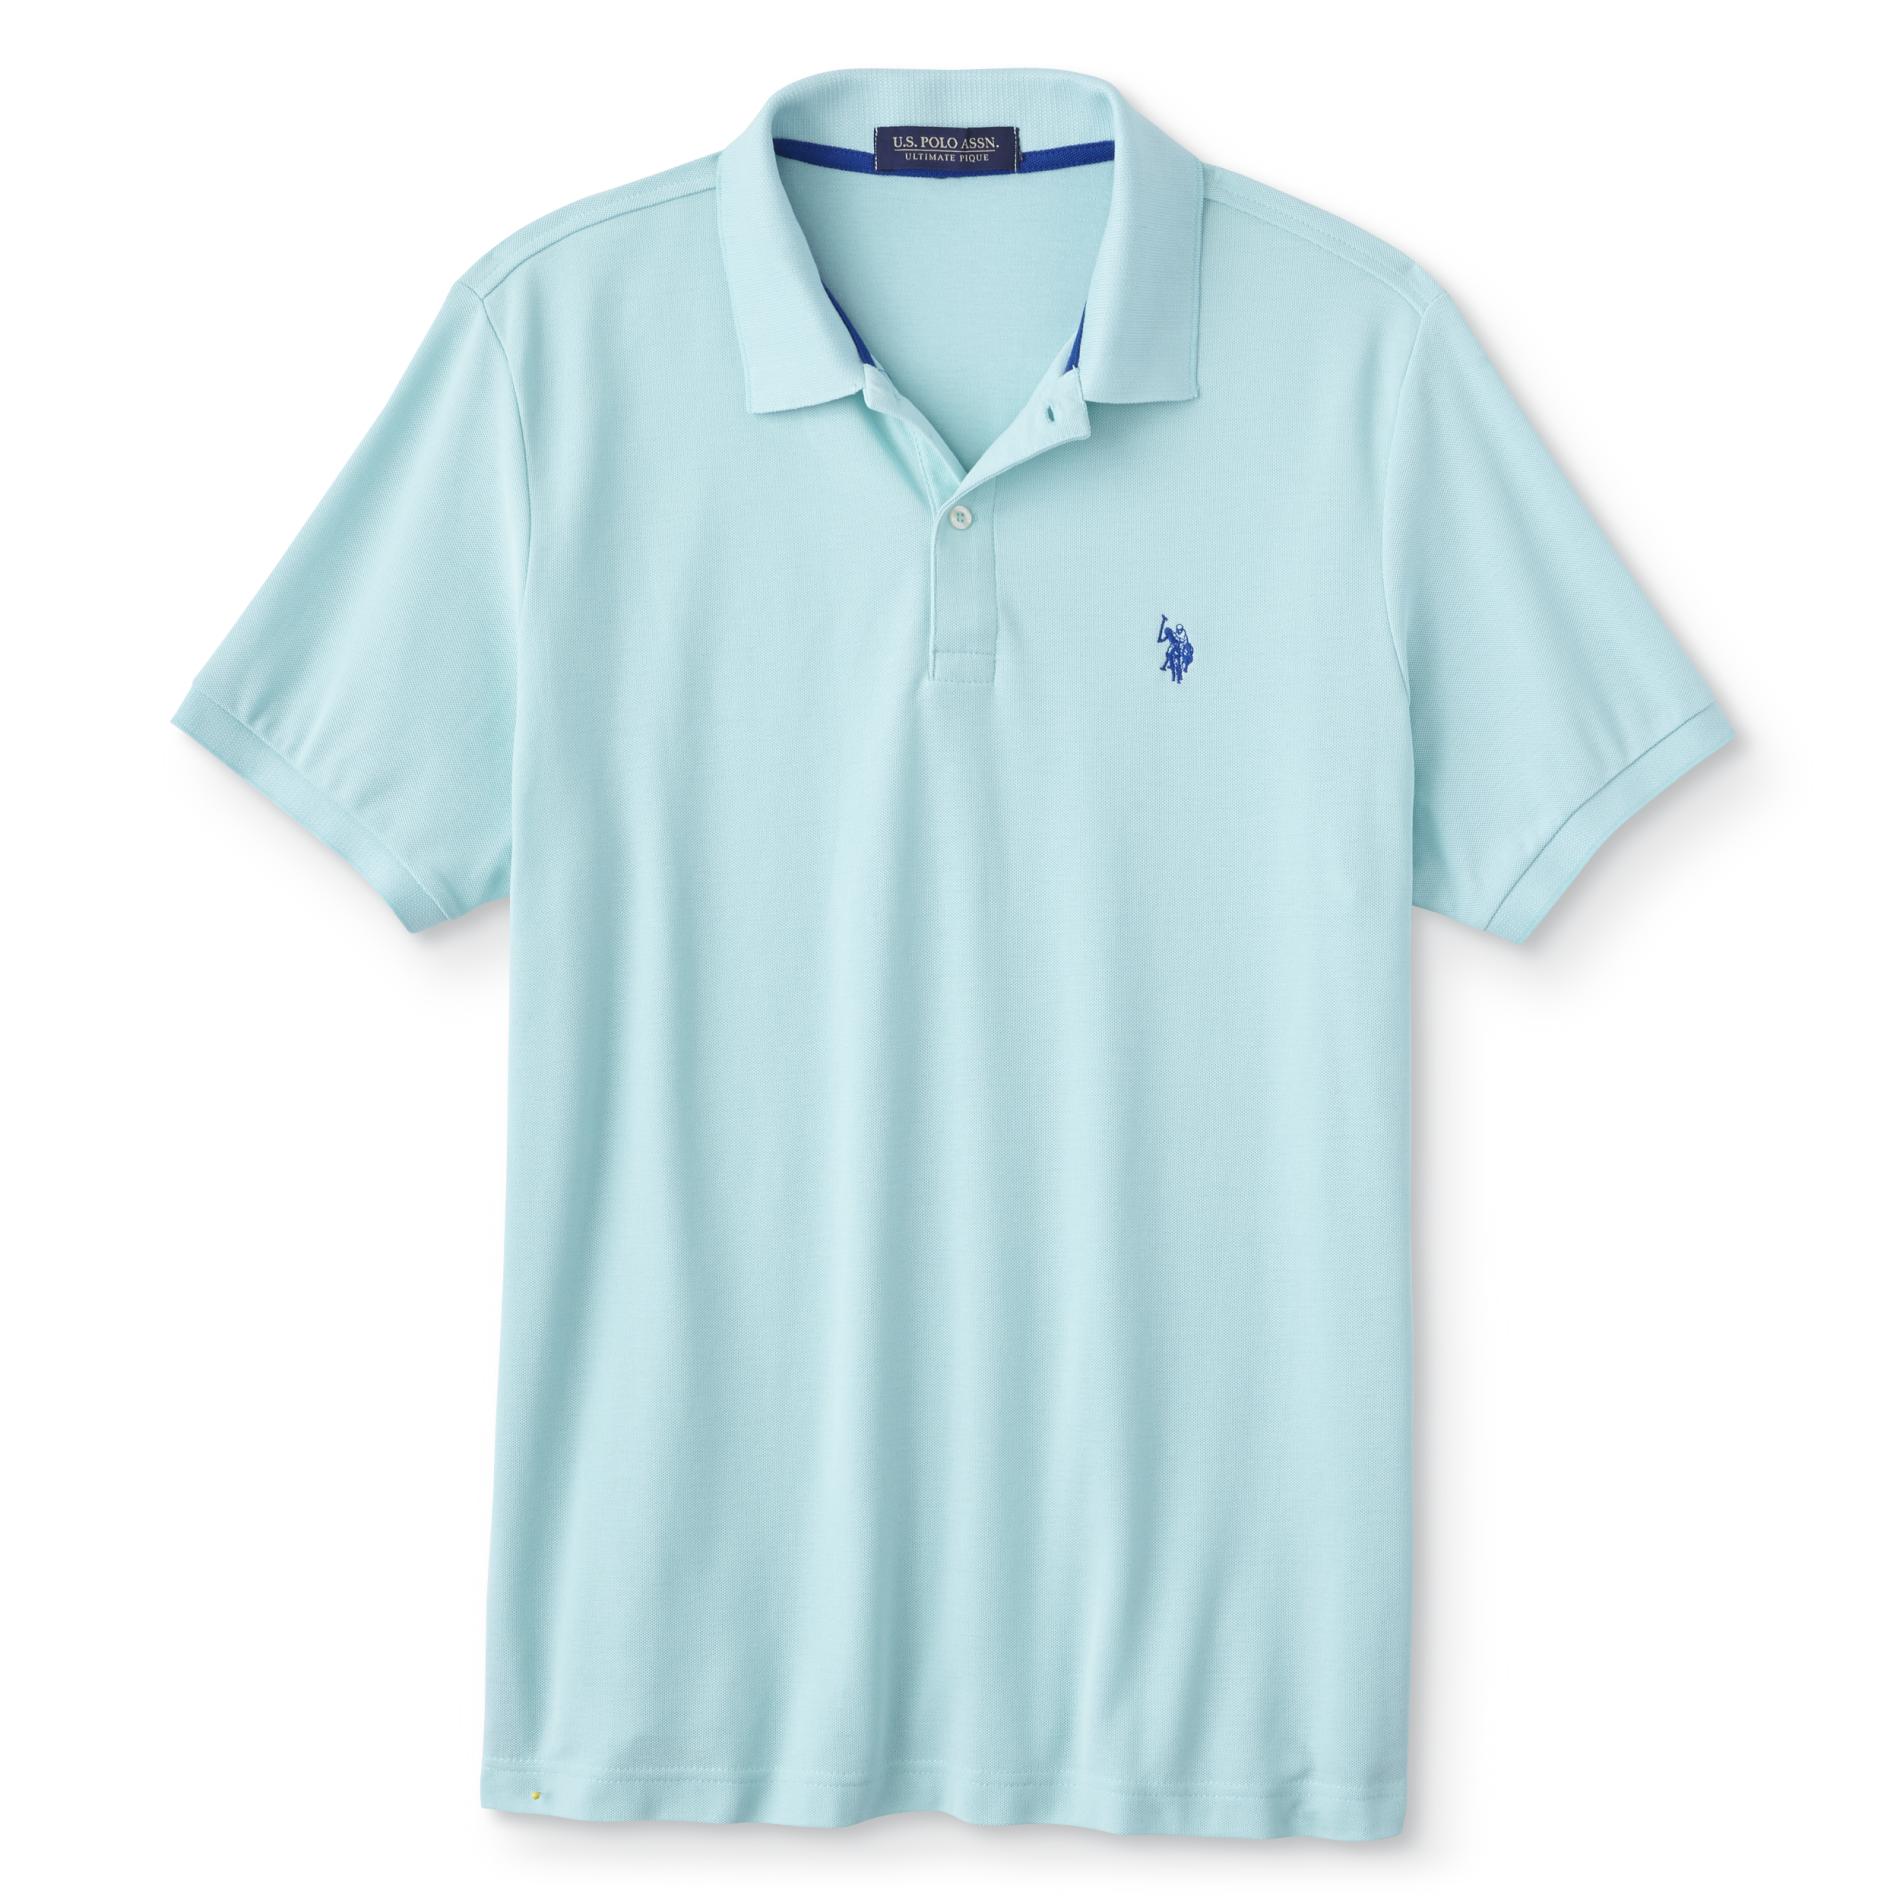 U.S. Polo Assn. Men's Ultimate Pique Polo Shirt